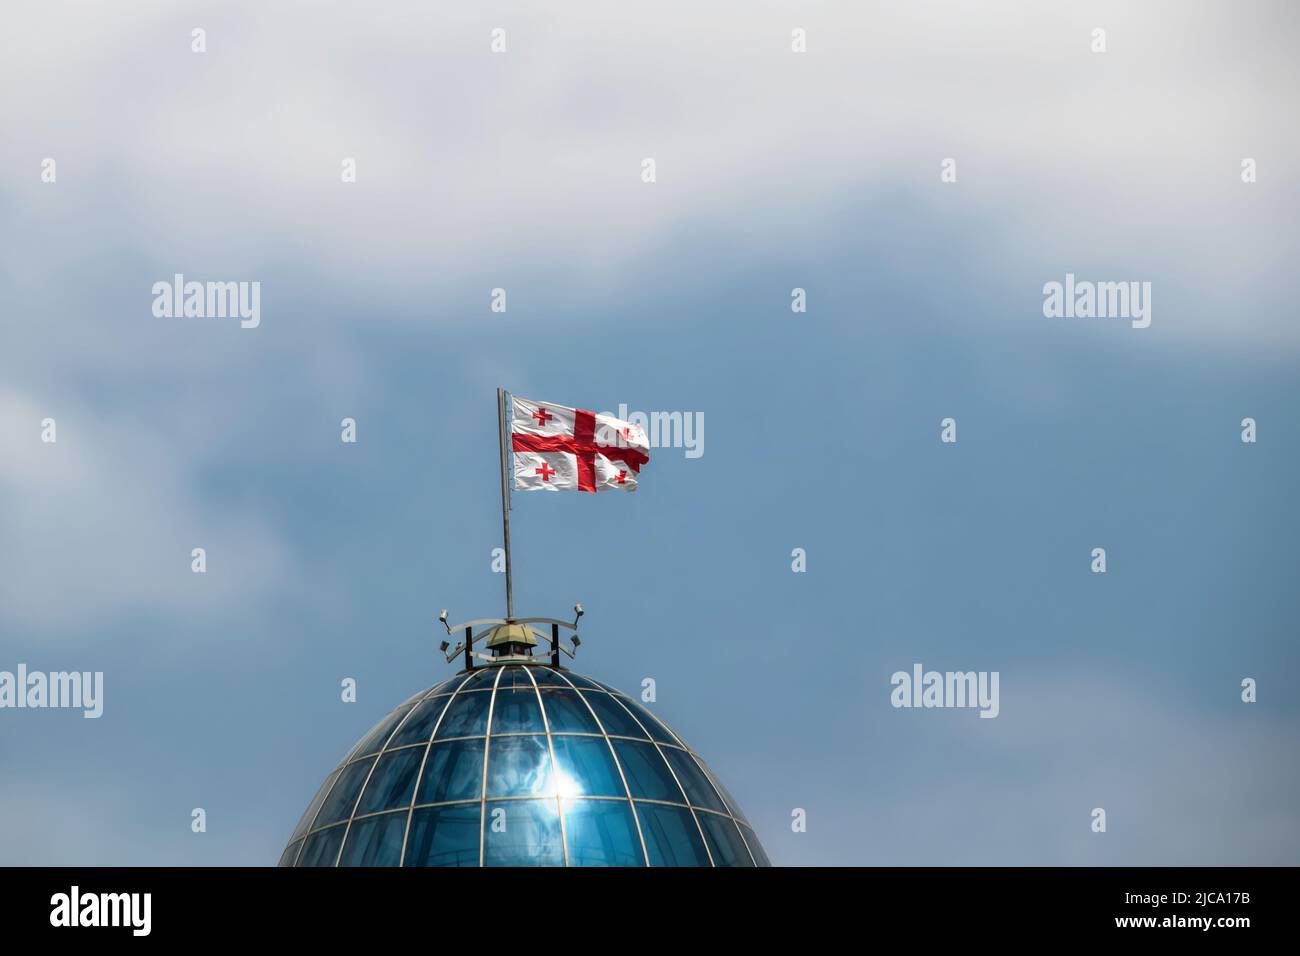 Nahaufnahme der Flagge der Republik Georgien weht im Wind auf der Kuppel der Hauptstadt in Tiflis mit einem blauen bewölkten Himmel dahinter - Raum für Kopie Stockfoto